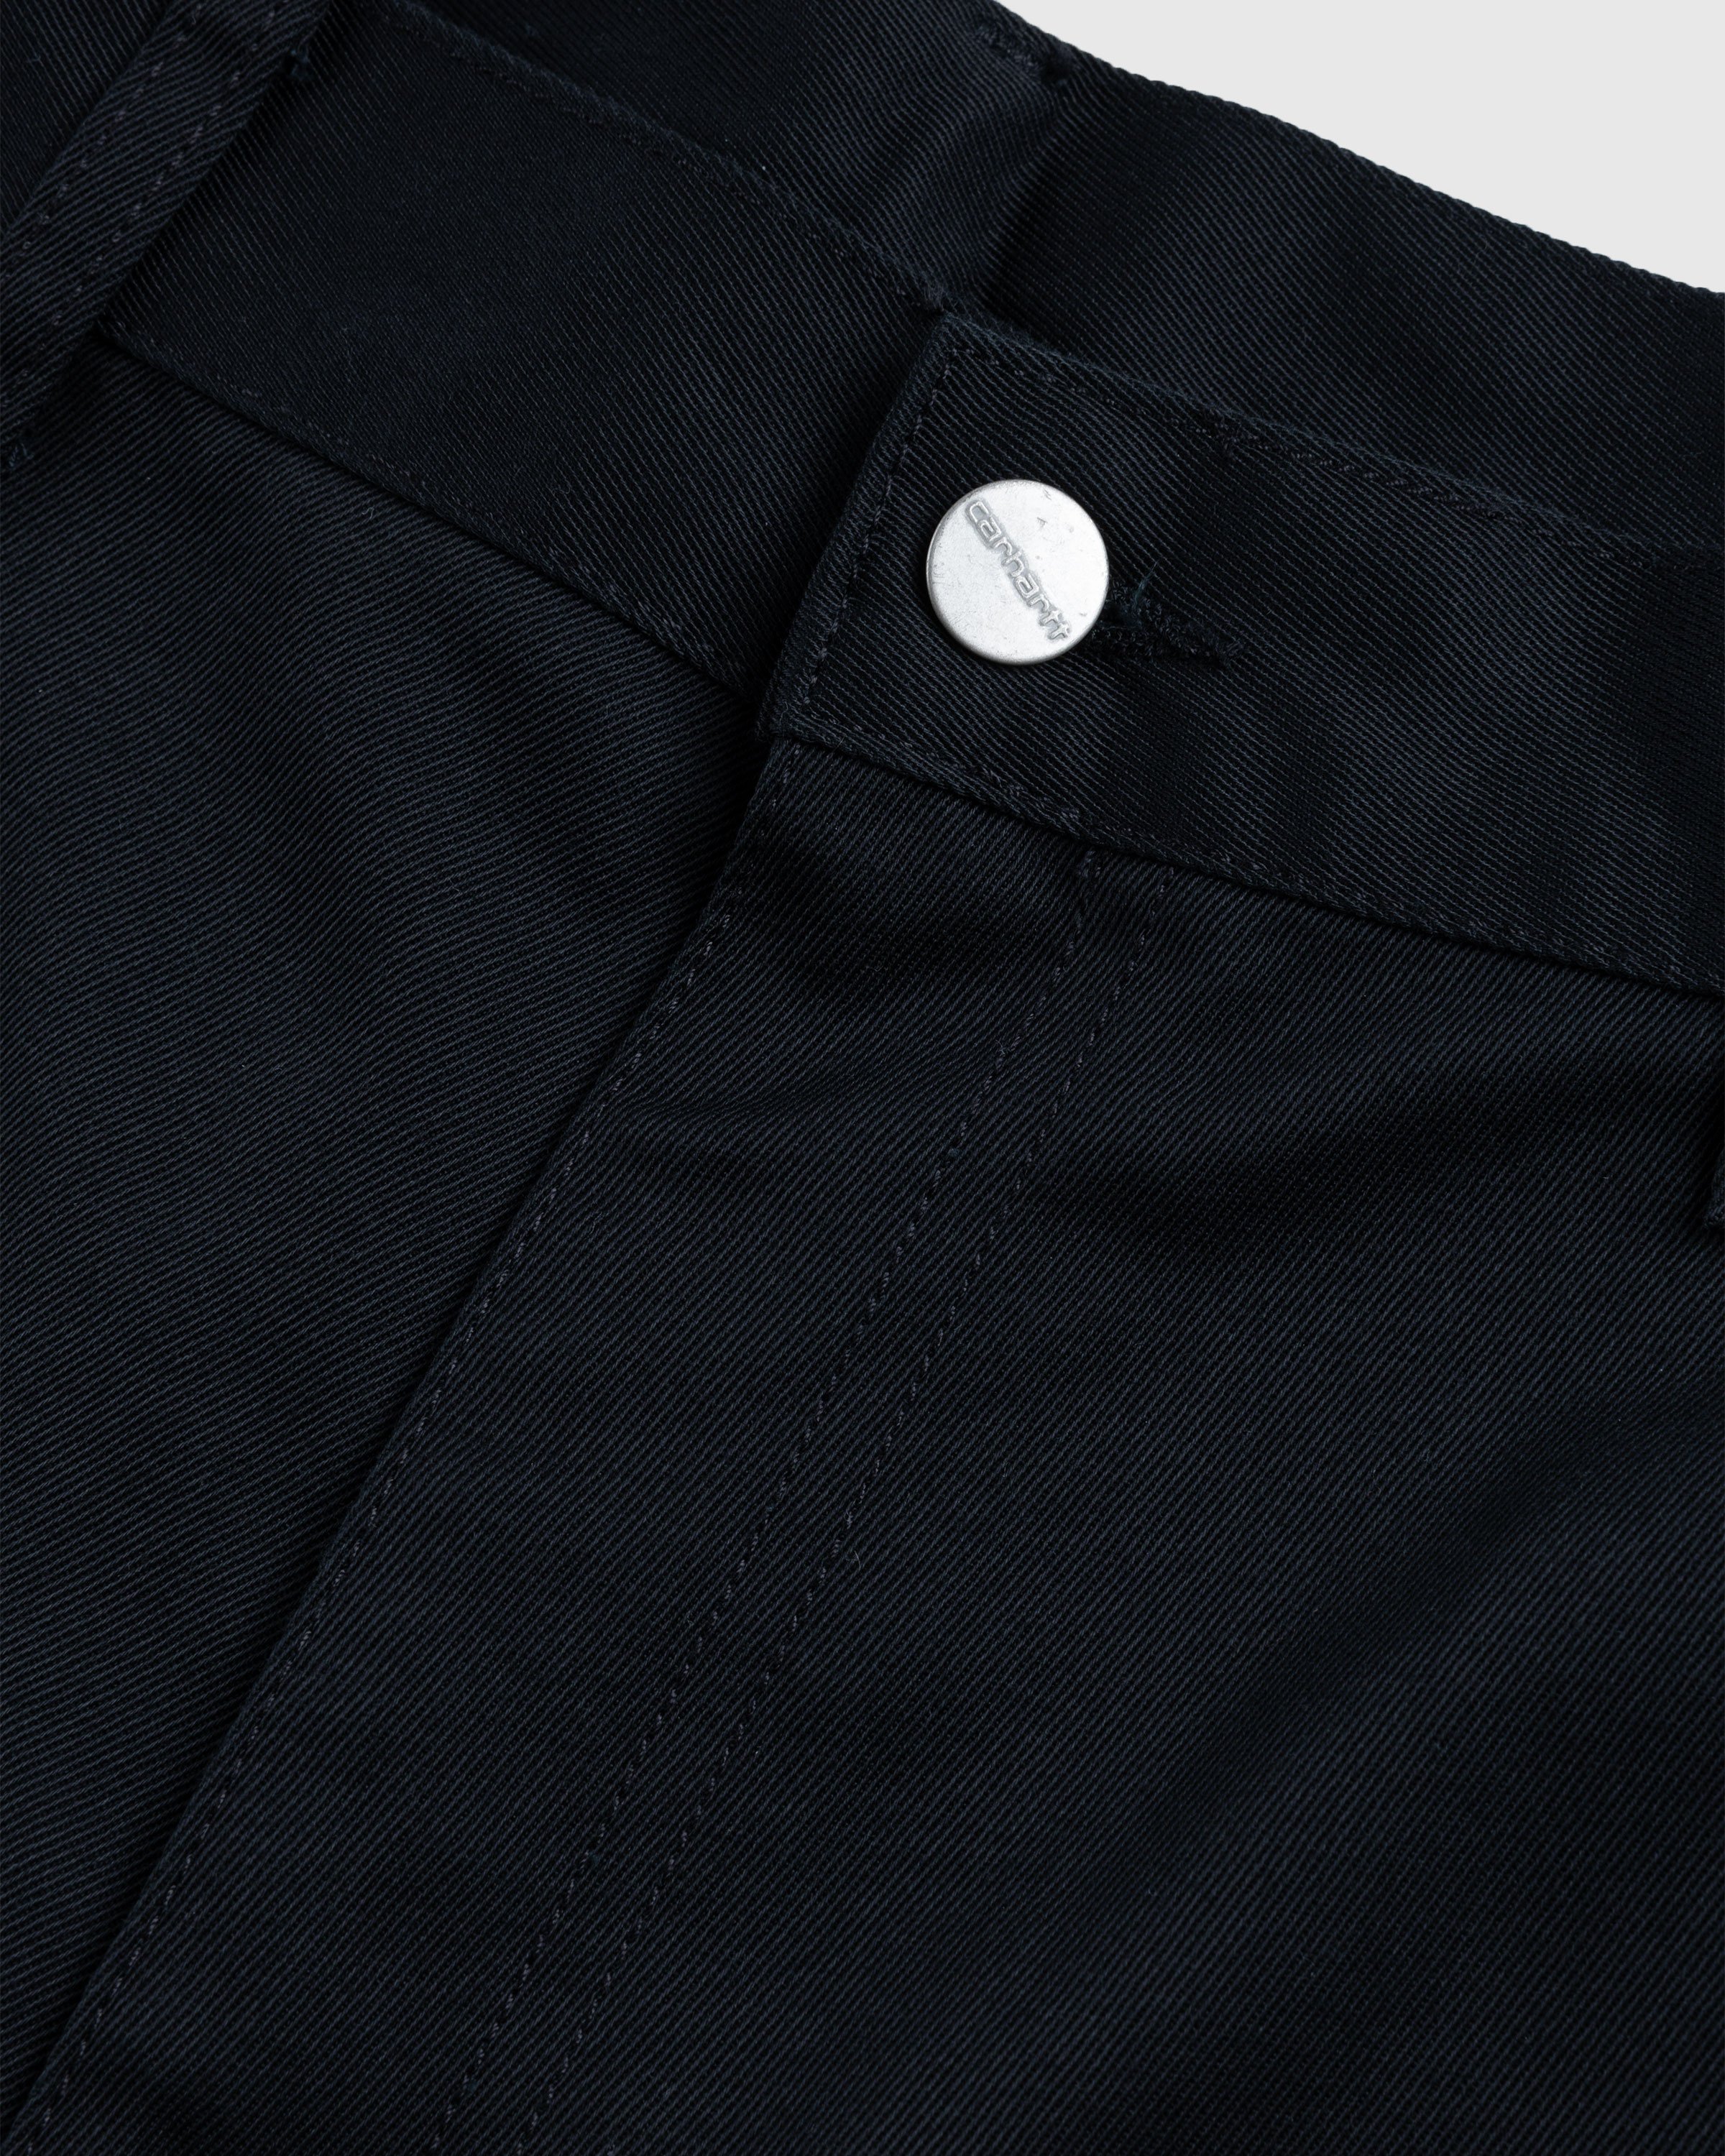 Carhartt WIP - Double Knee Pant Black /rinsed - Clothing - Black - Image 5